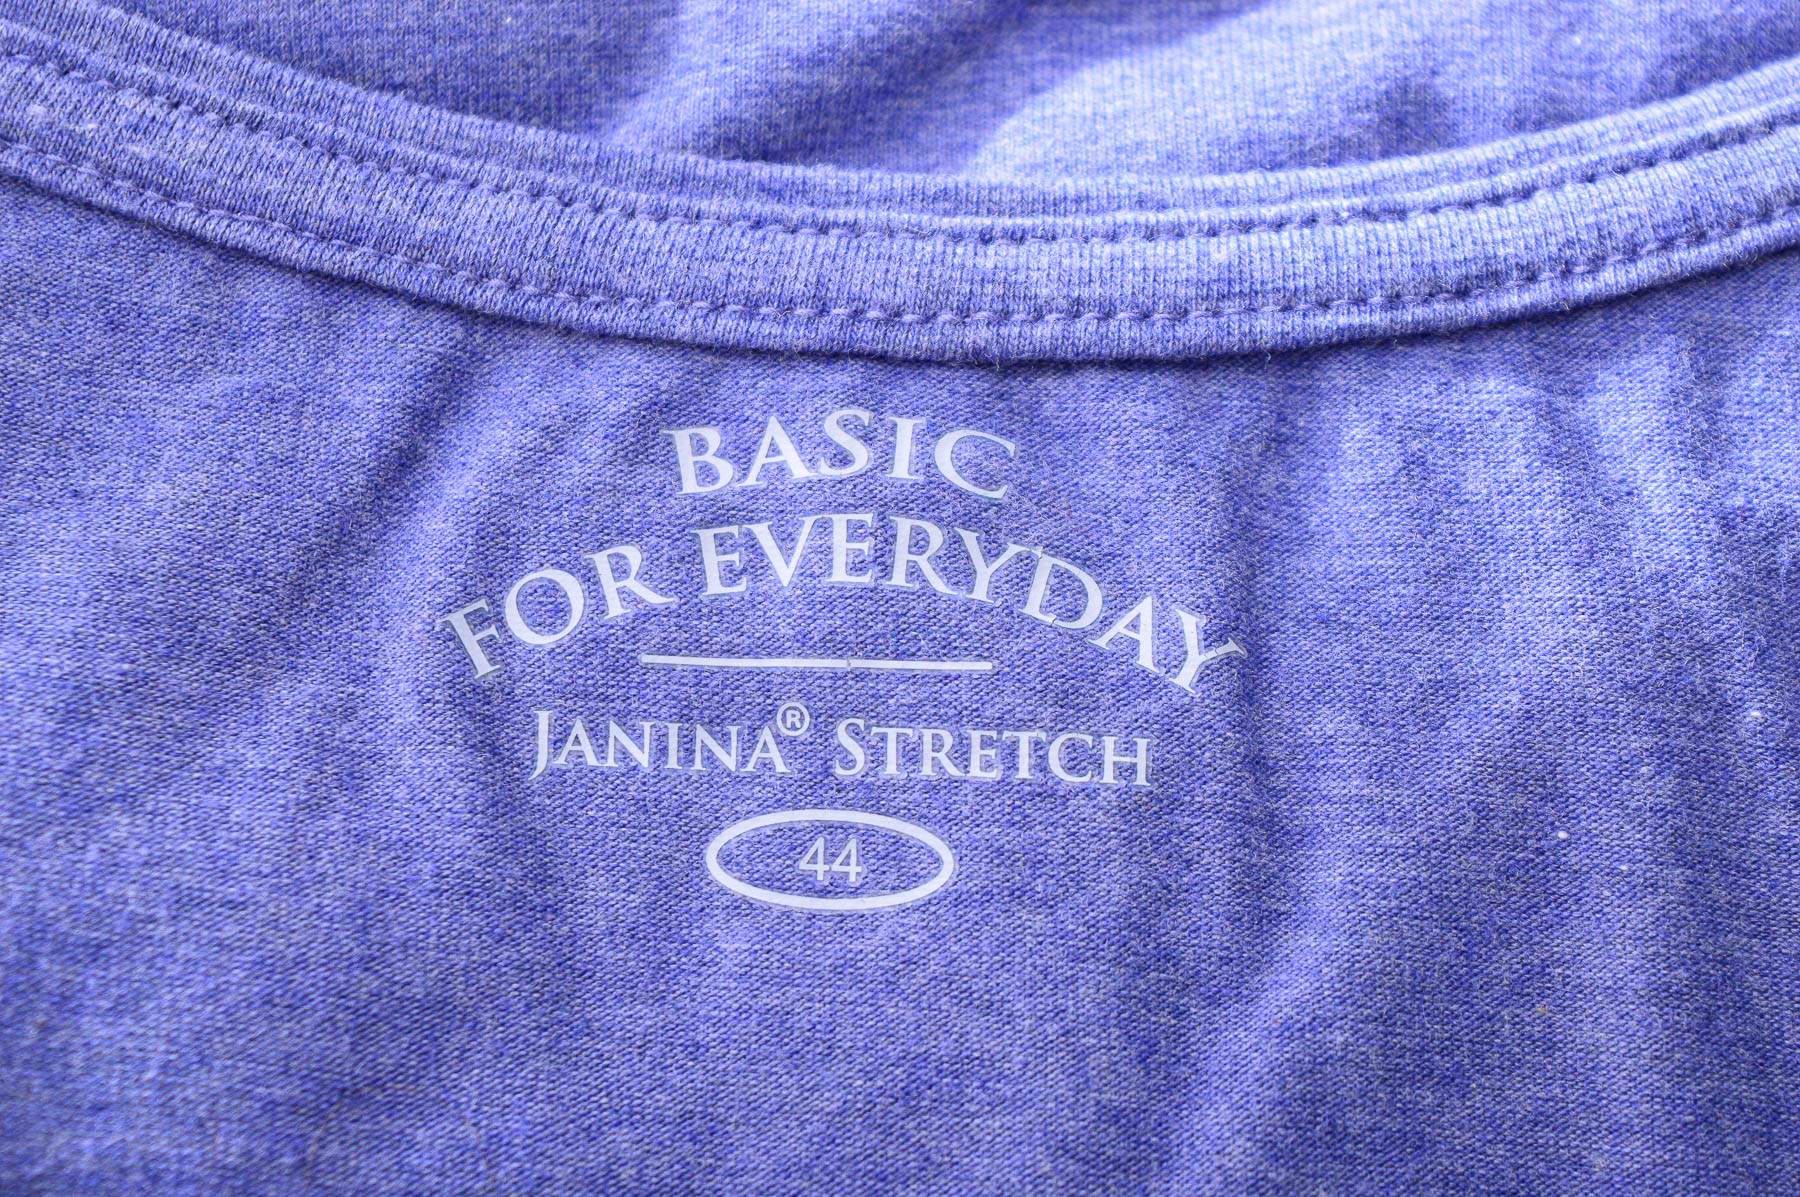 Γυνεκείο τοπ - Janina Stretch - 2